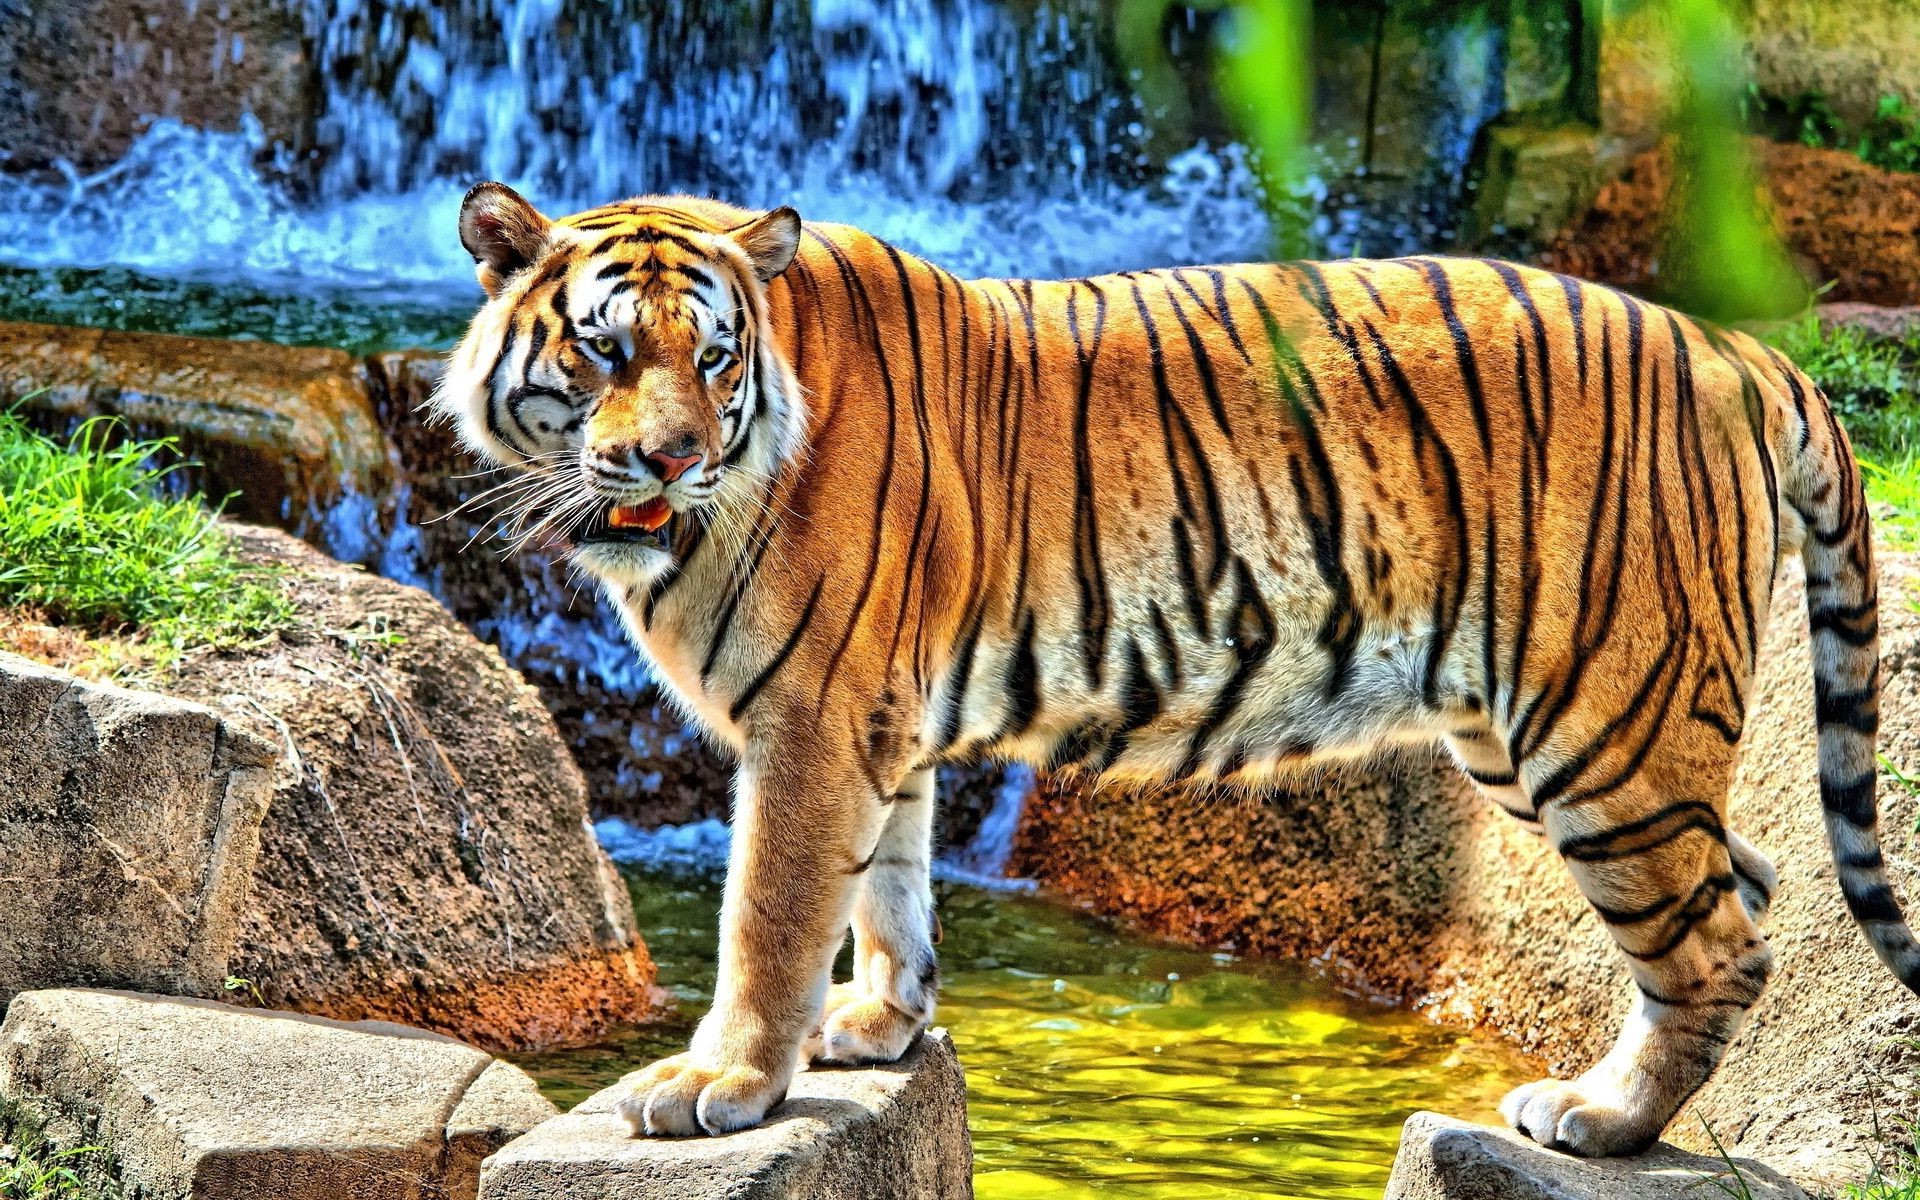 тигры тигр дикой природы кошка млекопитающее джунгли животное зоопарк хищник охотник большой мясоед дикий природа опасность сафари глава охота мех портрет агрессии